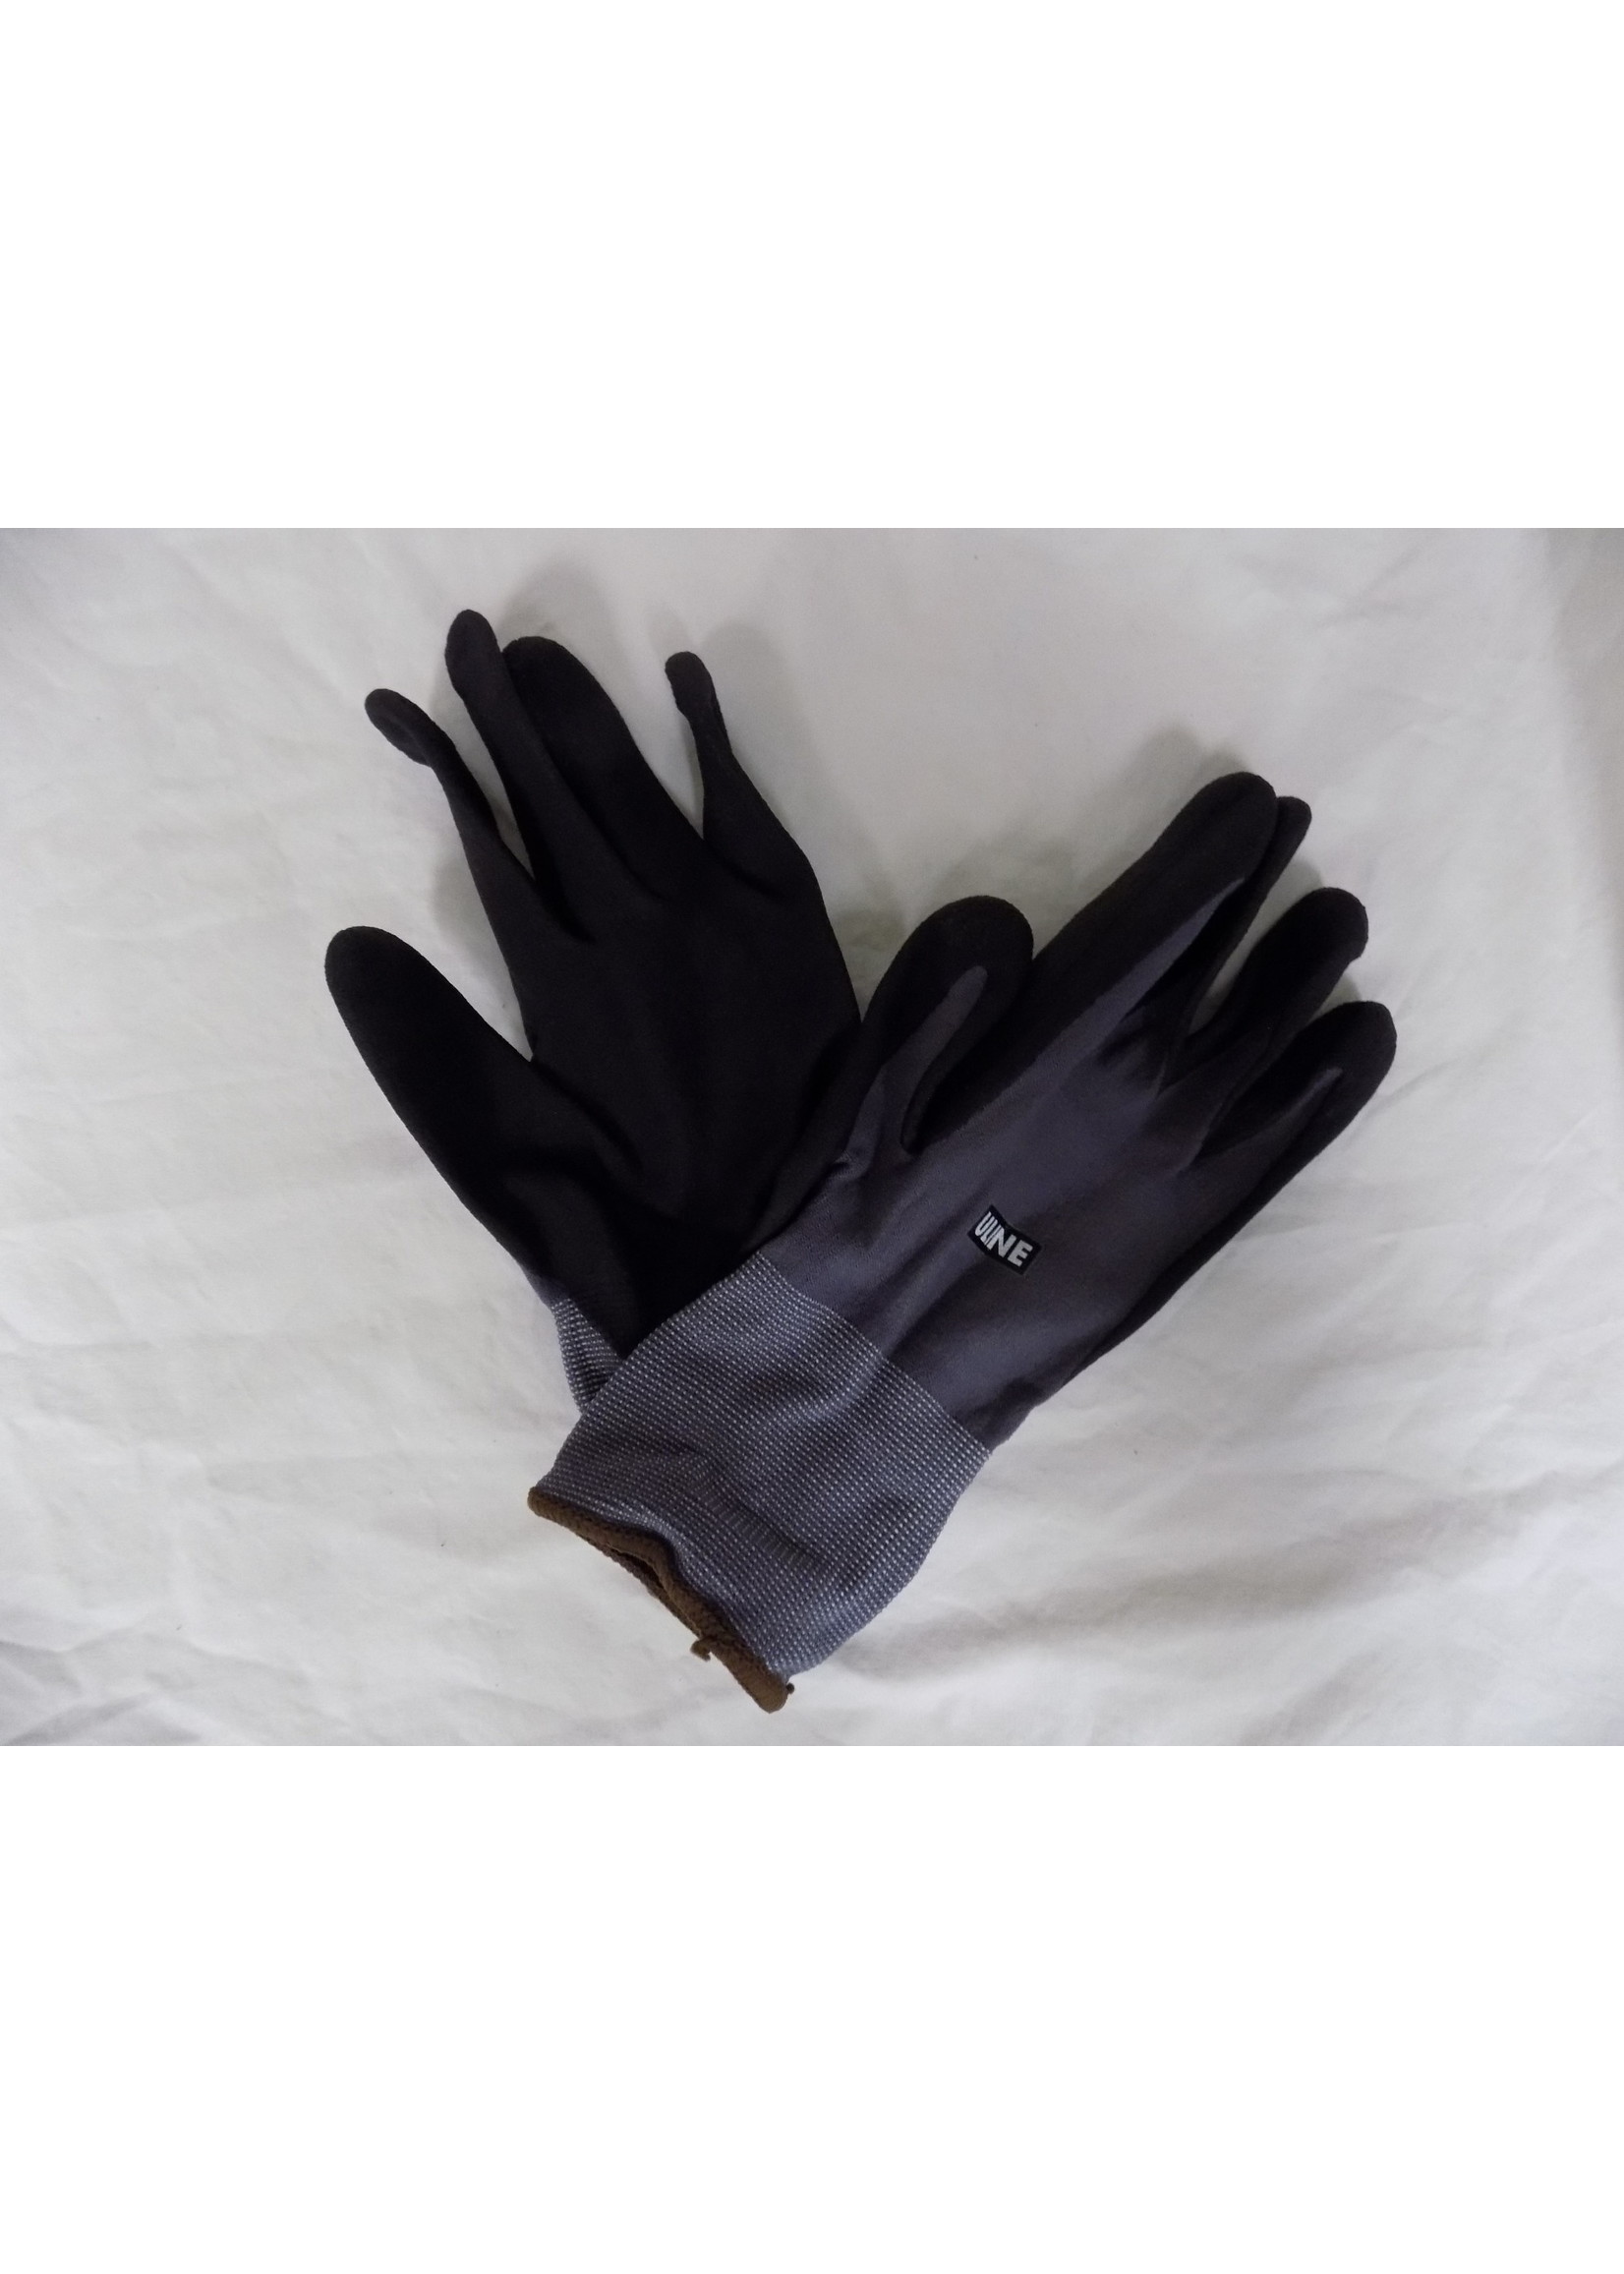 Coolflex Uline Coolflex Nitrile Gloves Large